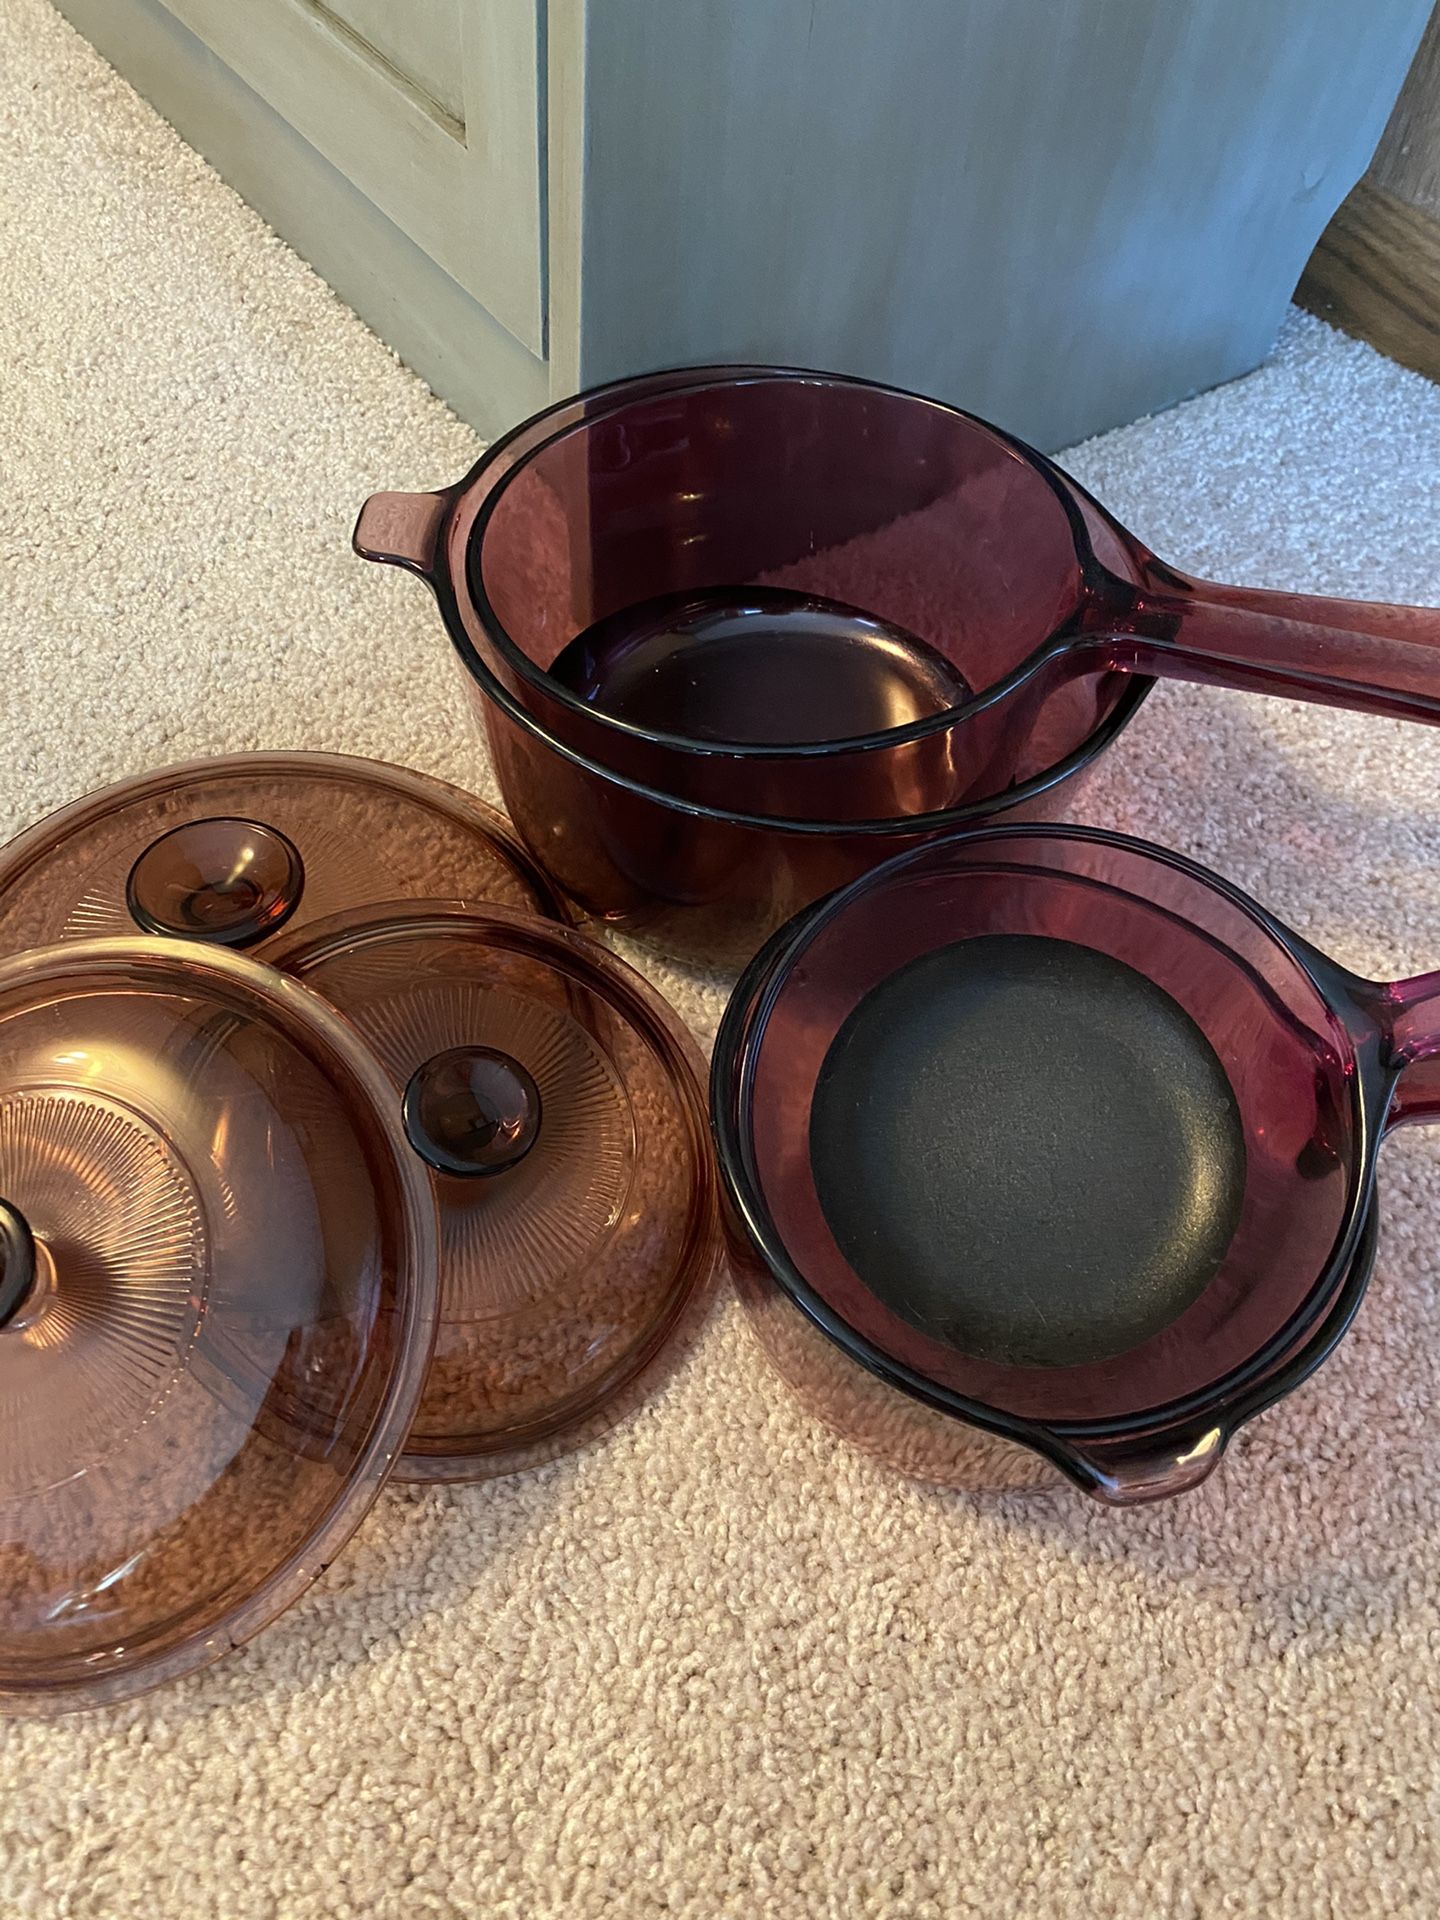 Pyrex pots with lids